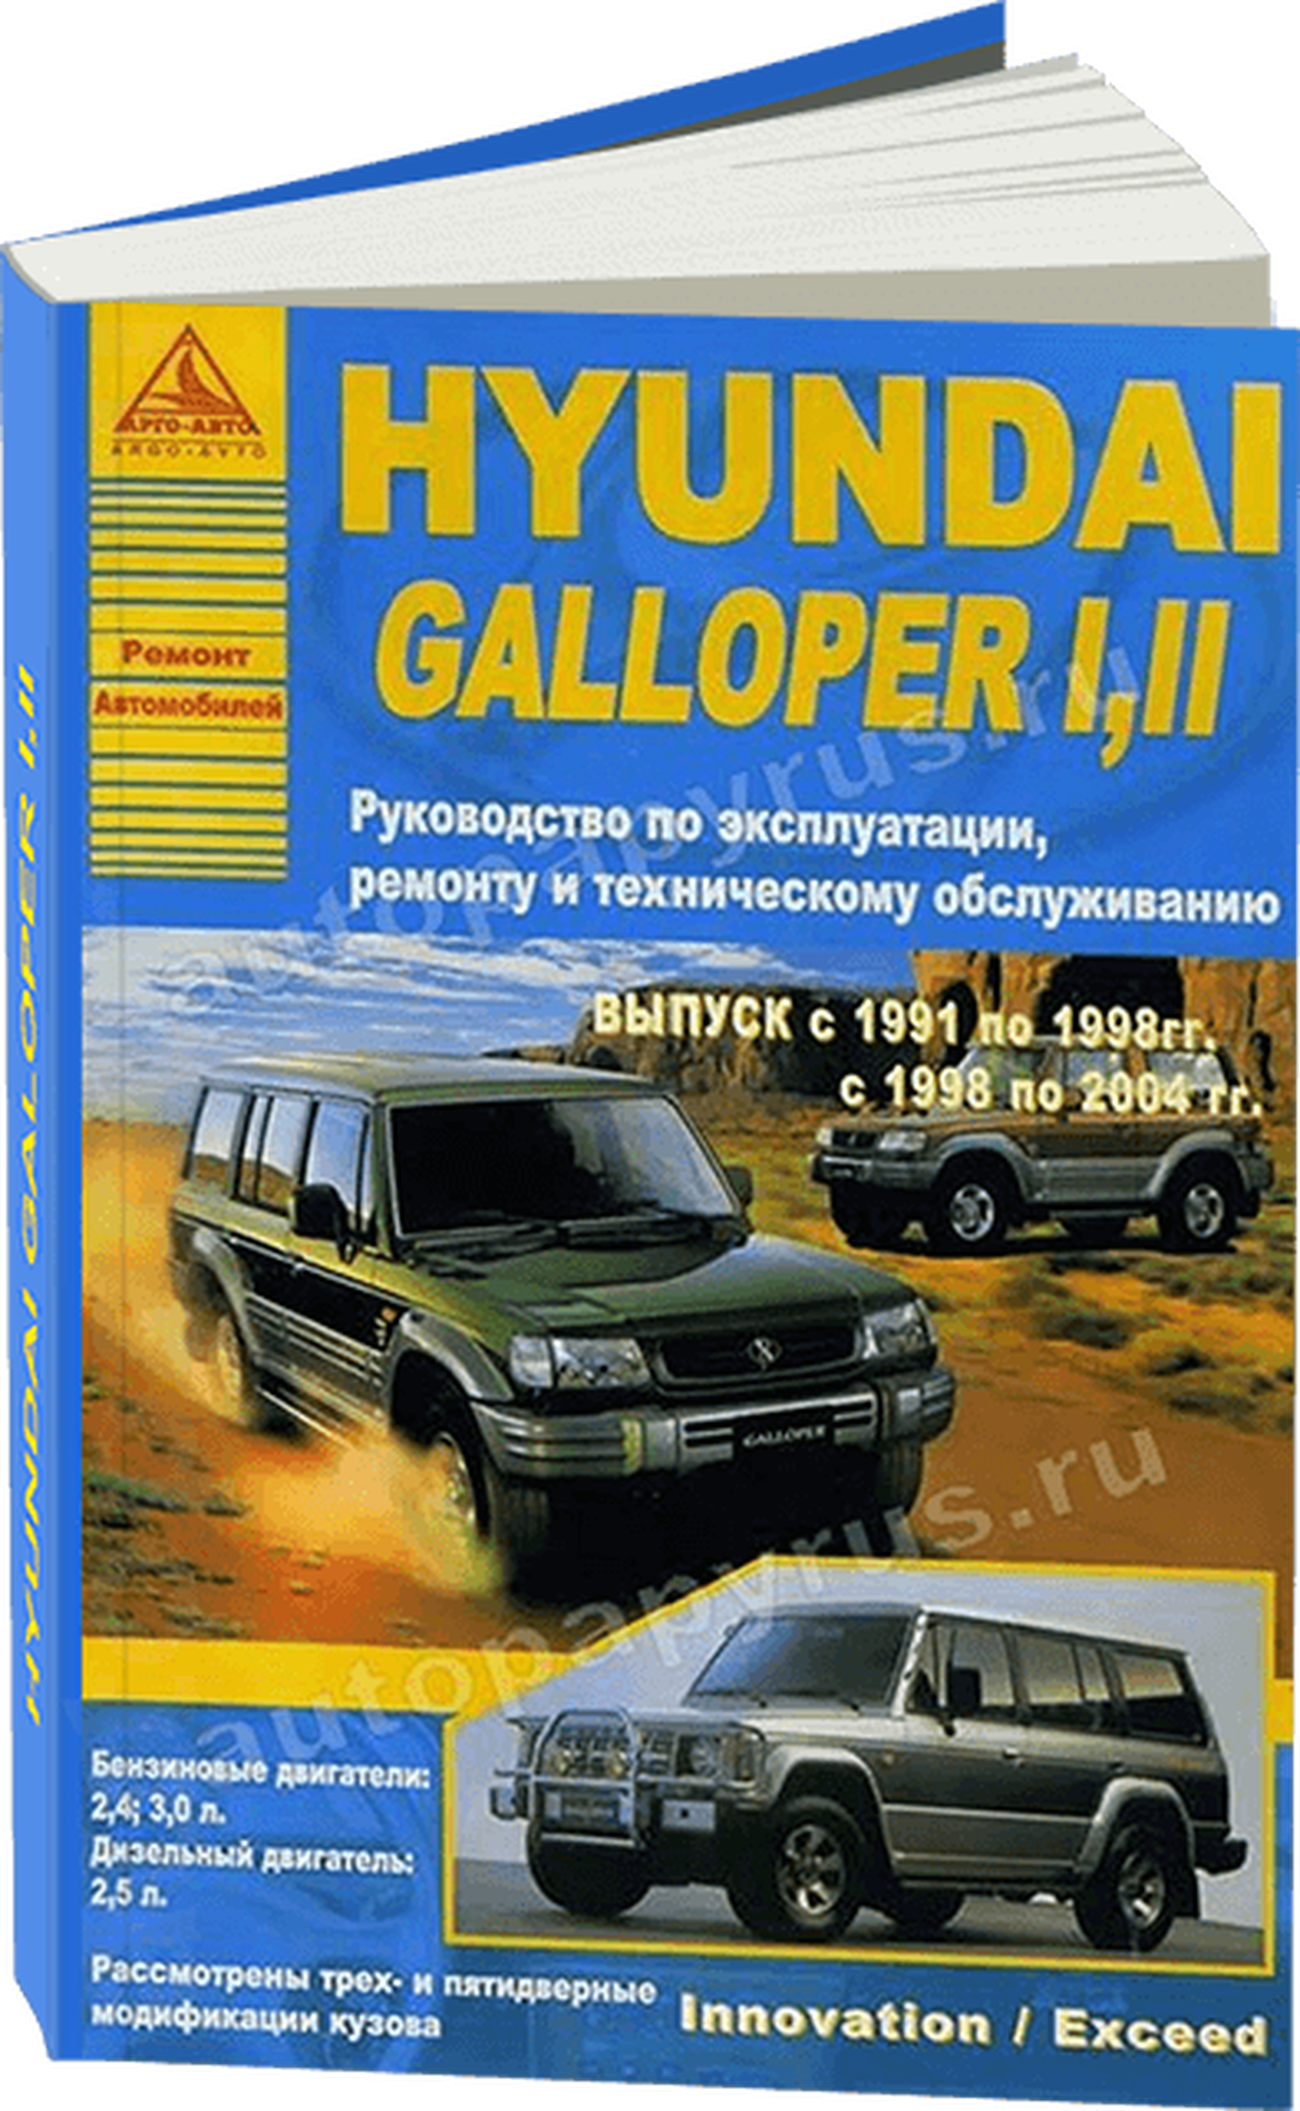 Книга: HYUNDAI GALLOPER 1, 2 (б , д) 1991-2004 г.в., рем., экспл., то | Арго-Авто